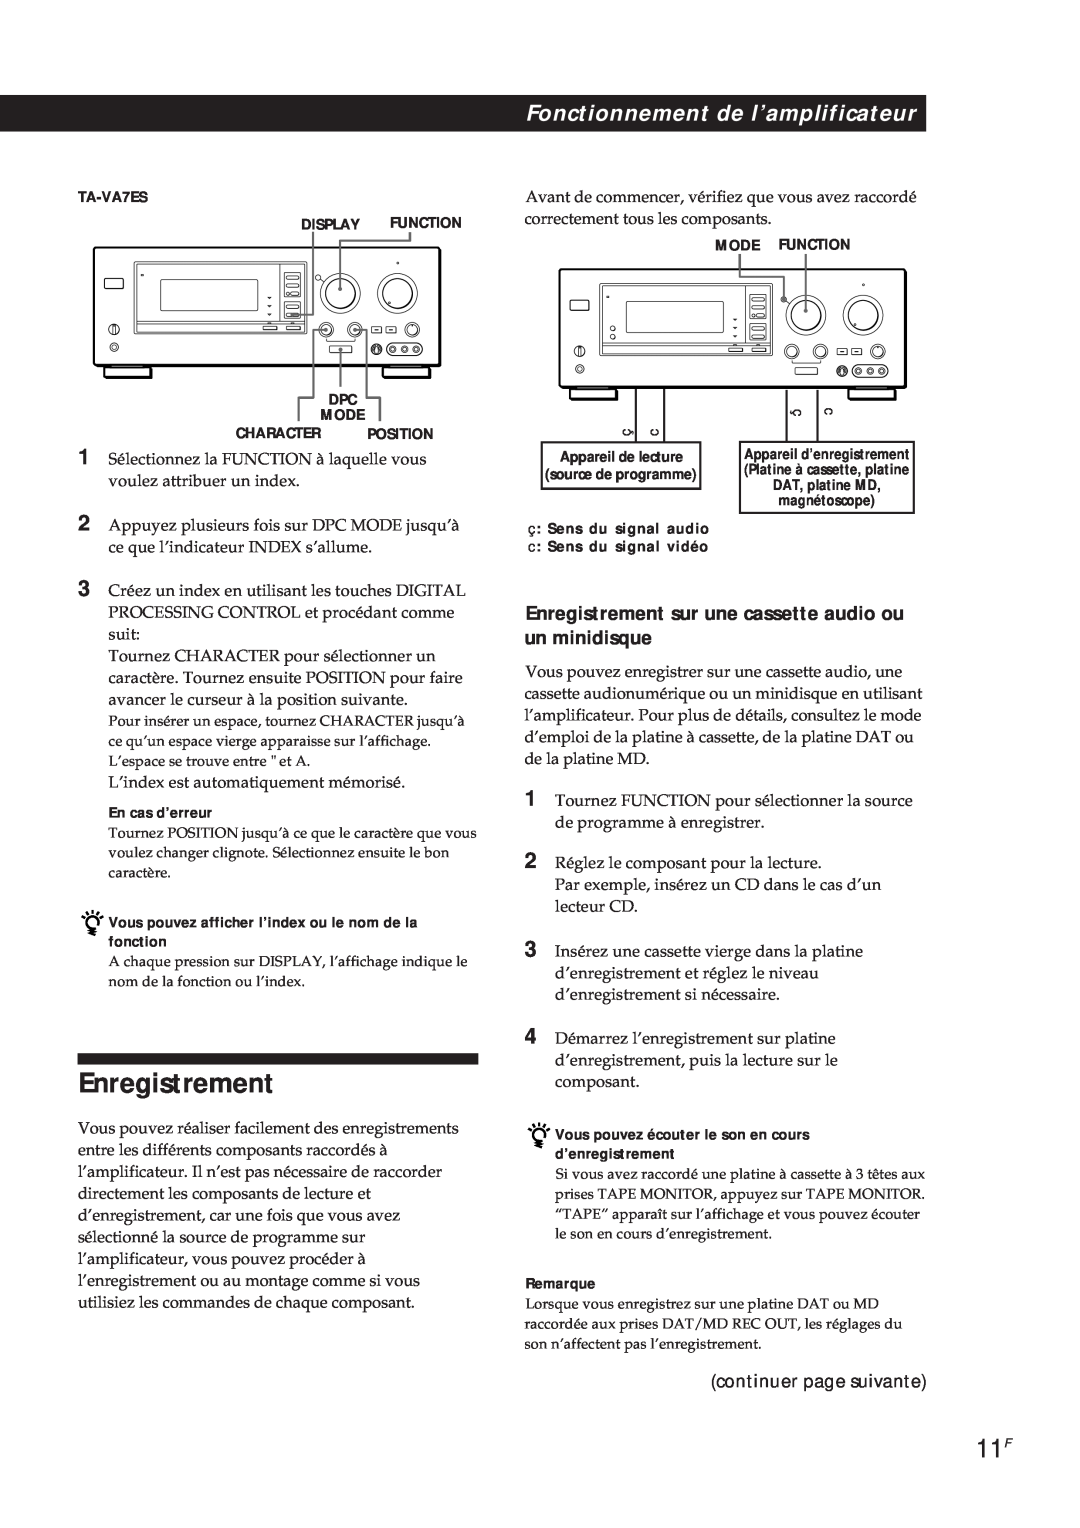 Sony TA-VA7ES manual Enregistrement, continuer page suivante, En cas d’erreur, Remarque, Fonctionnement de l’amplificateur 